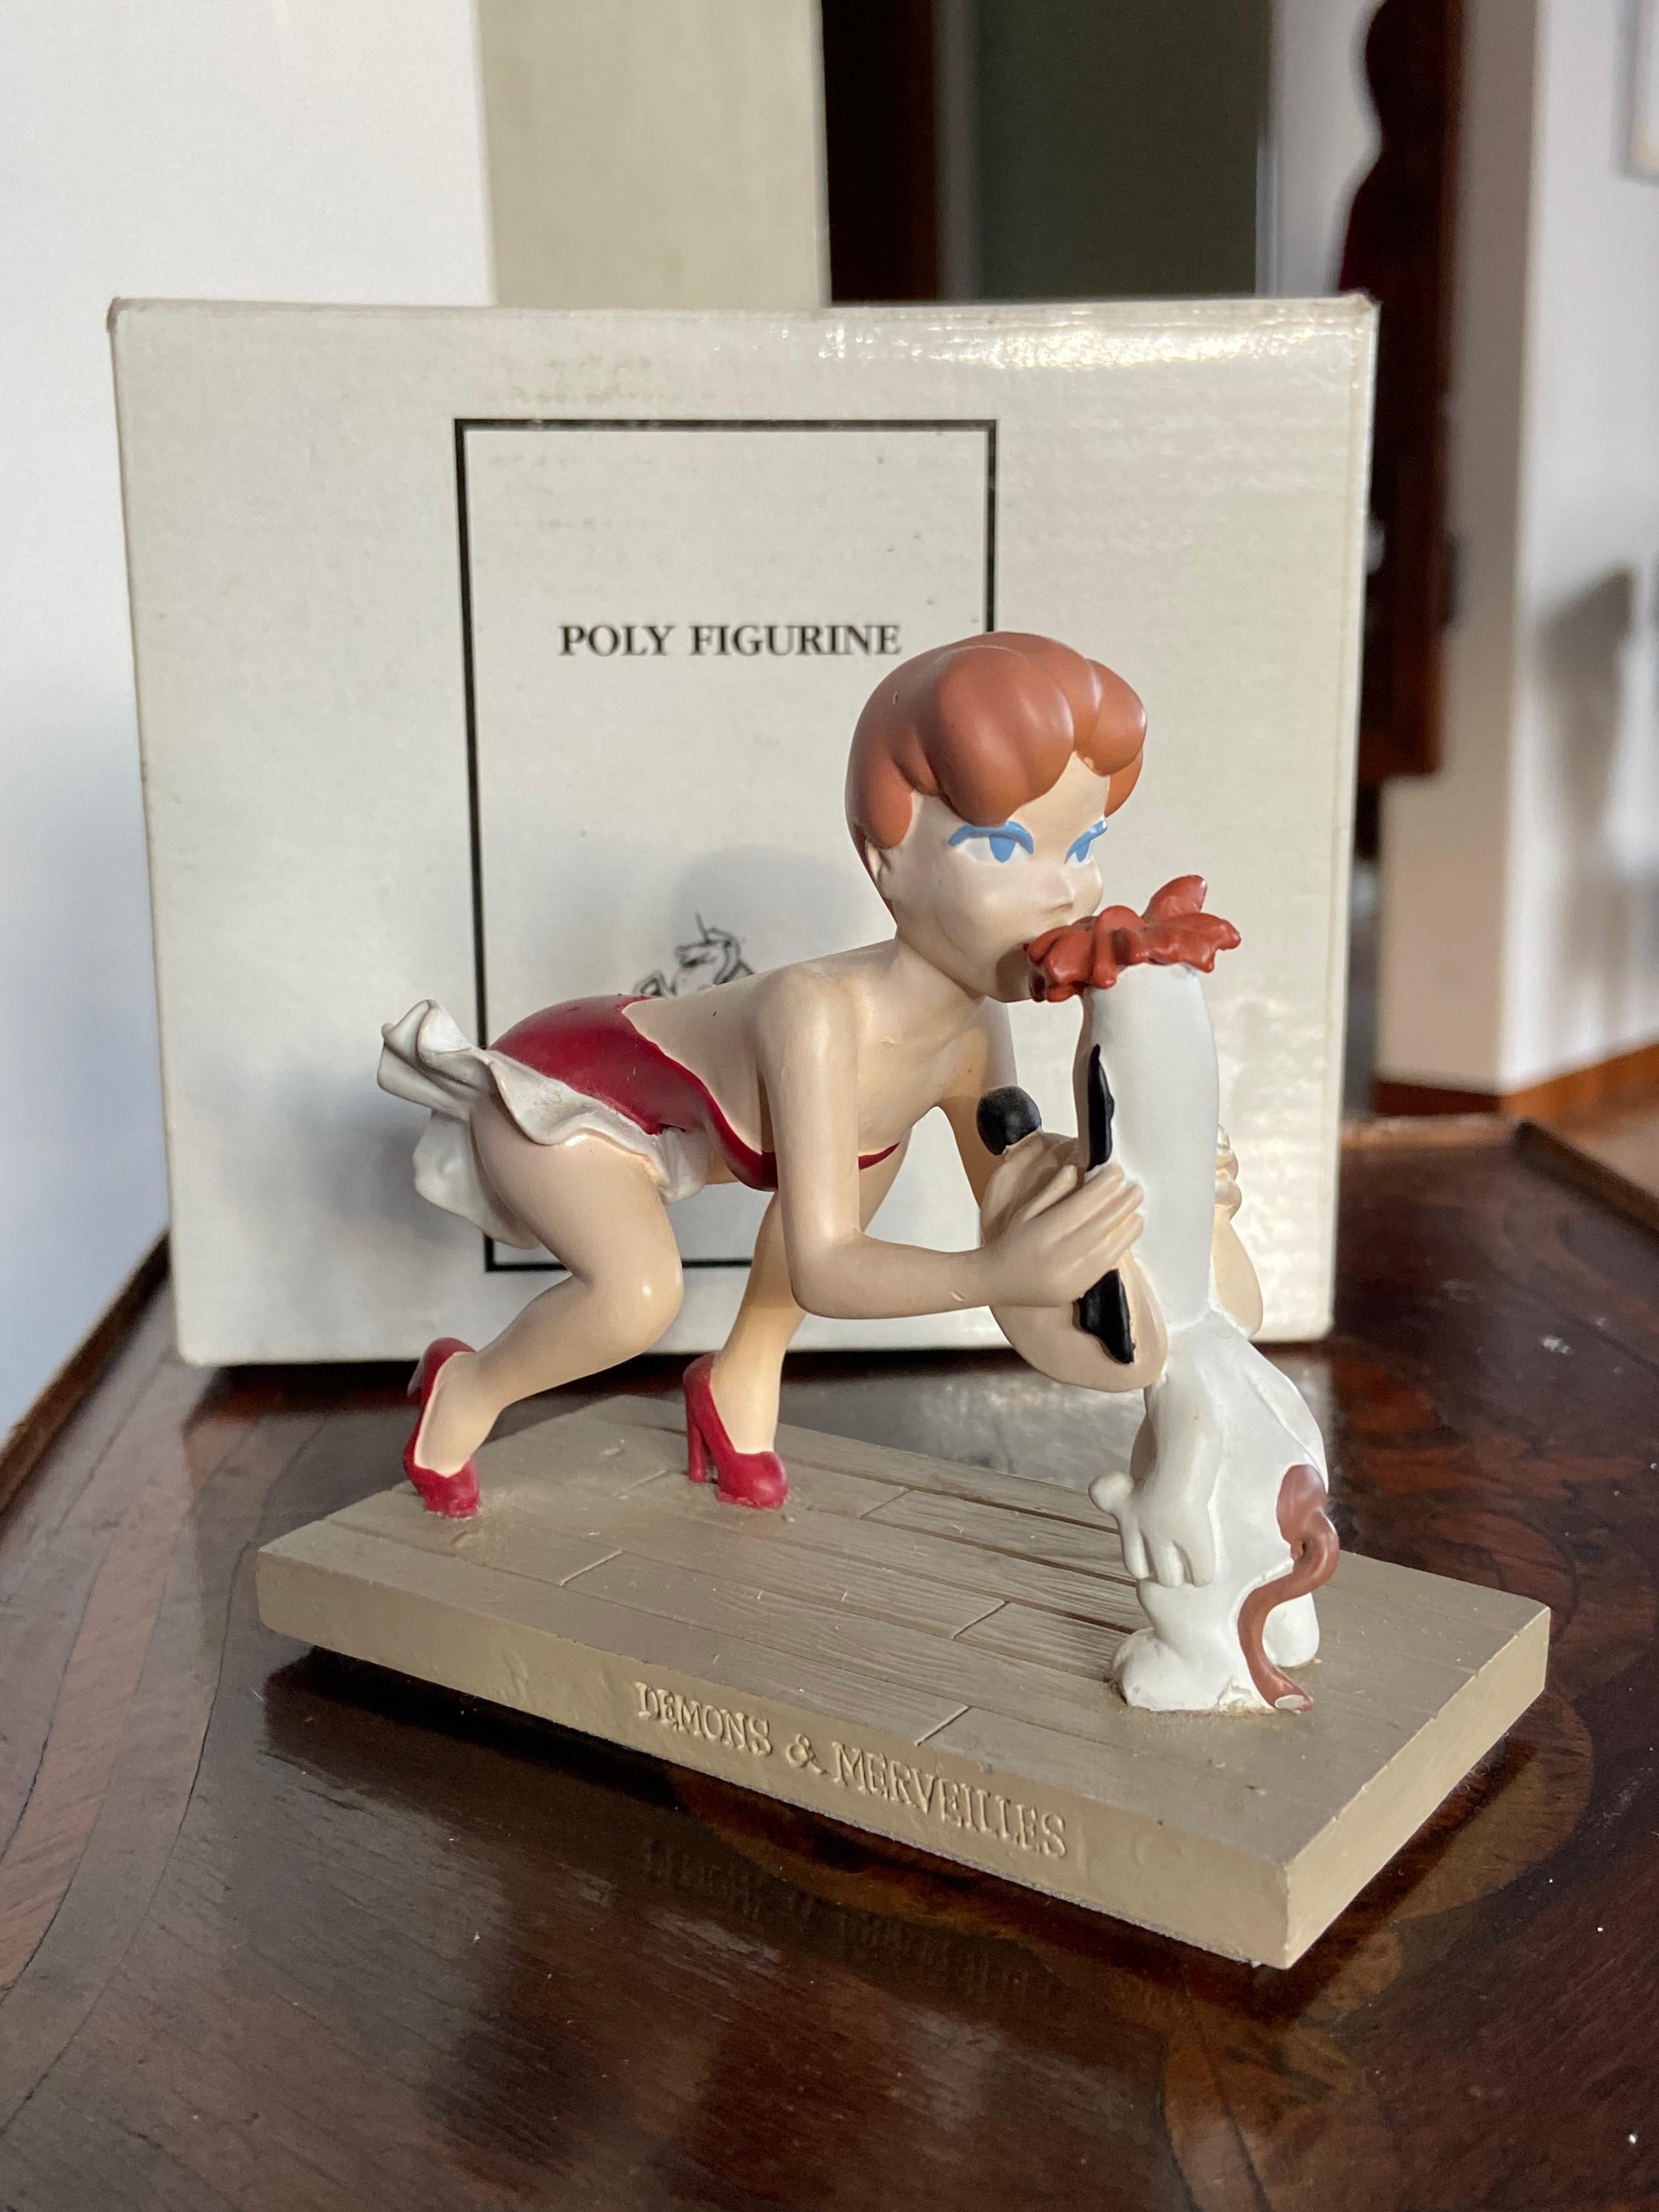 Figurine Statue von Droopy geküsst von dem Mädchen von Demons & Merveilles.
Made in 1997 in der Originalverpackung in perfektem Zustand.
Perfektes Geschenk und ein Teil einer großen Sammlung.
USA, 1997.